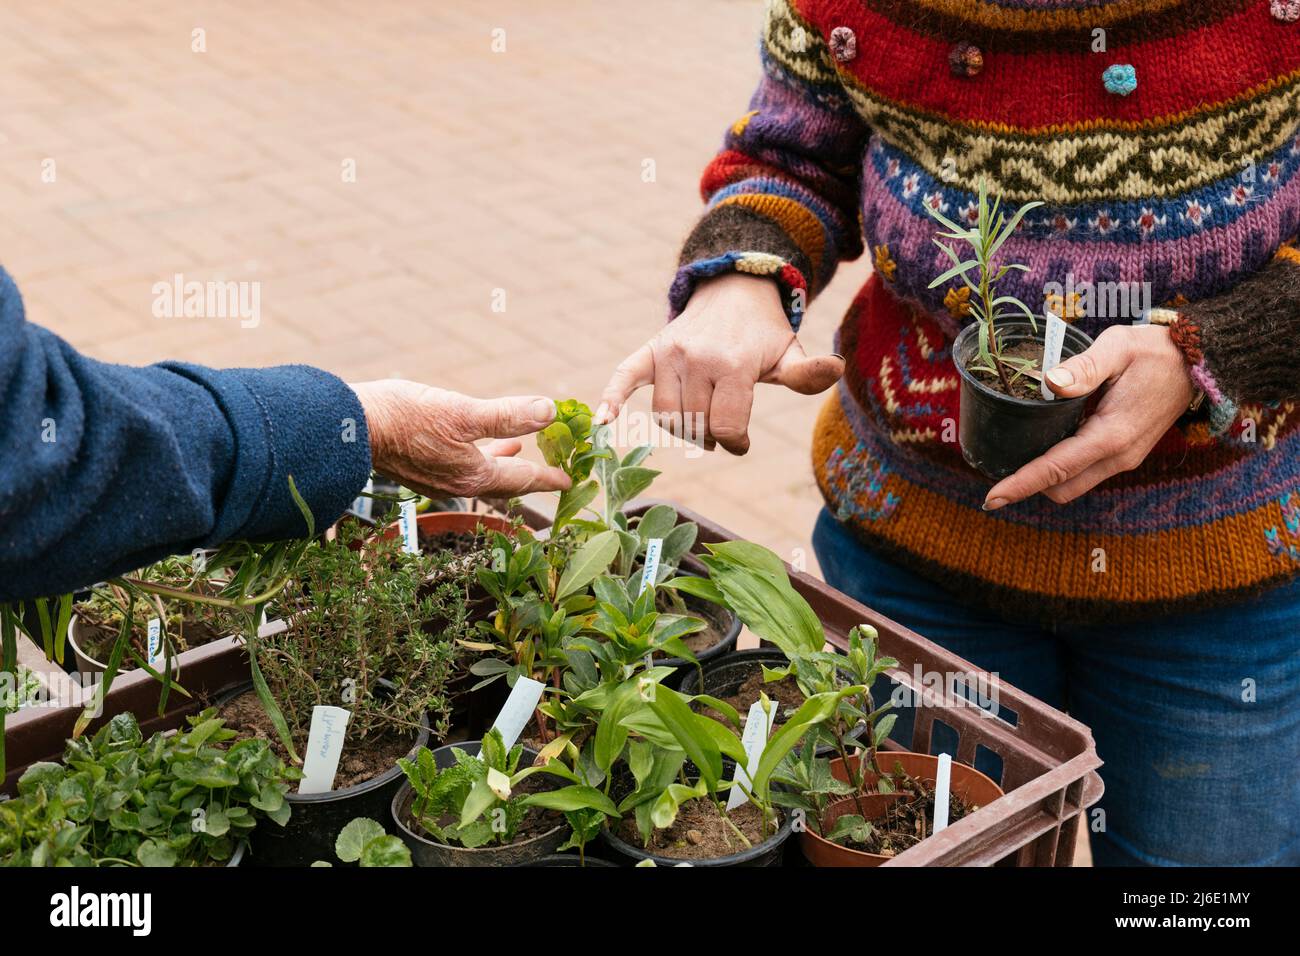 Deux jardiniers échangeant des plantes et échangeant des connaissances sur la culture au cours d'un événement d'échange de plantes. Banque D'Images